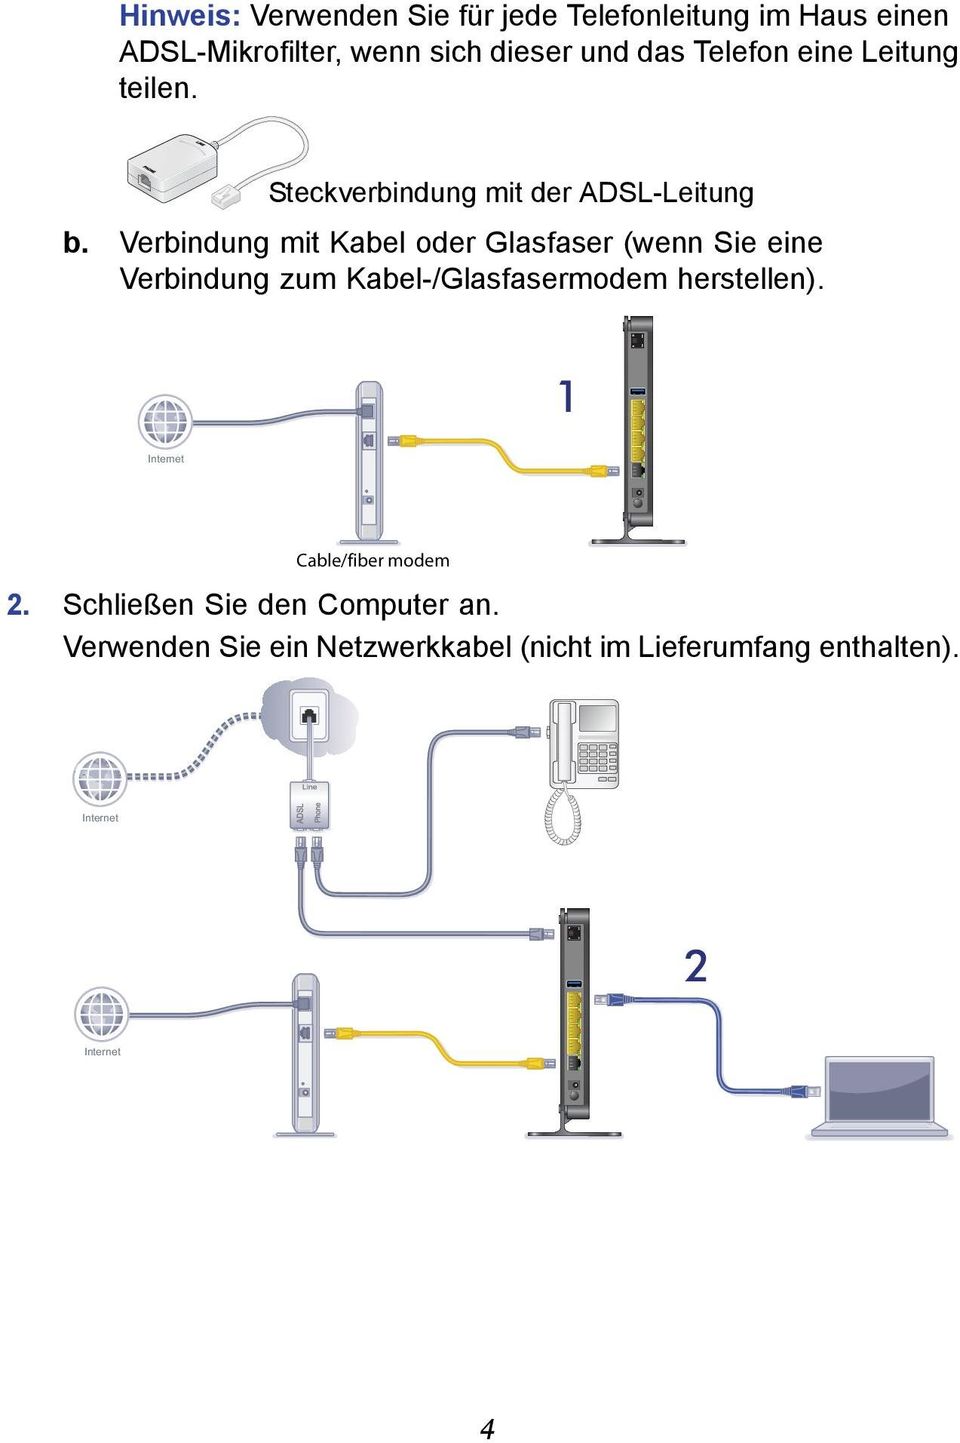 Verbindung mit Kabel oder Glasfaser (wenn Sie eine Verbindung zum Kabel-/Glasfasermodem herstellen).